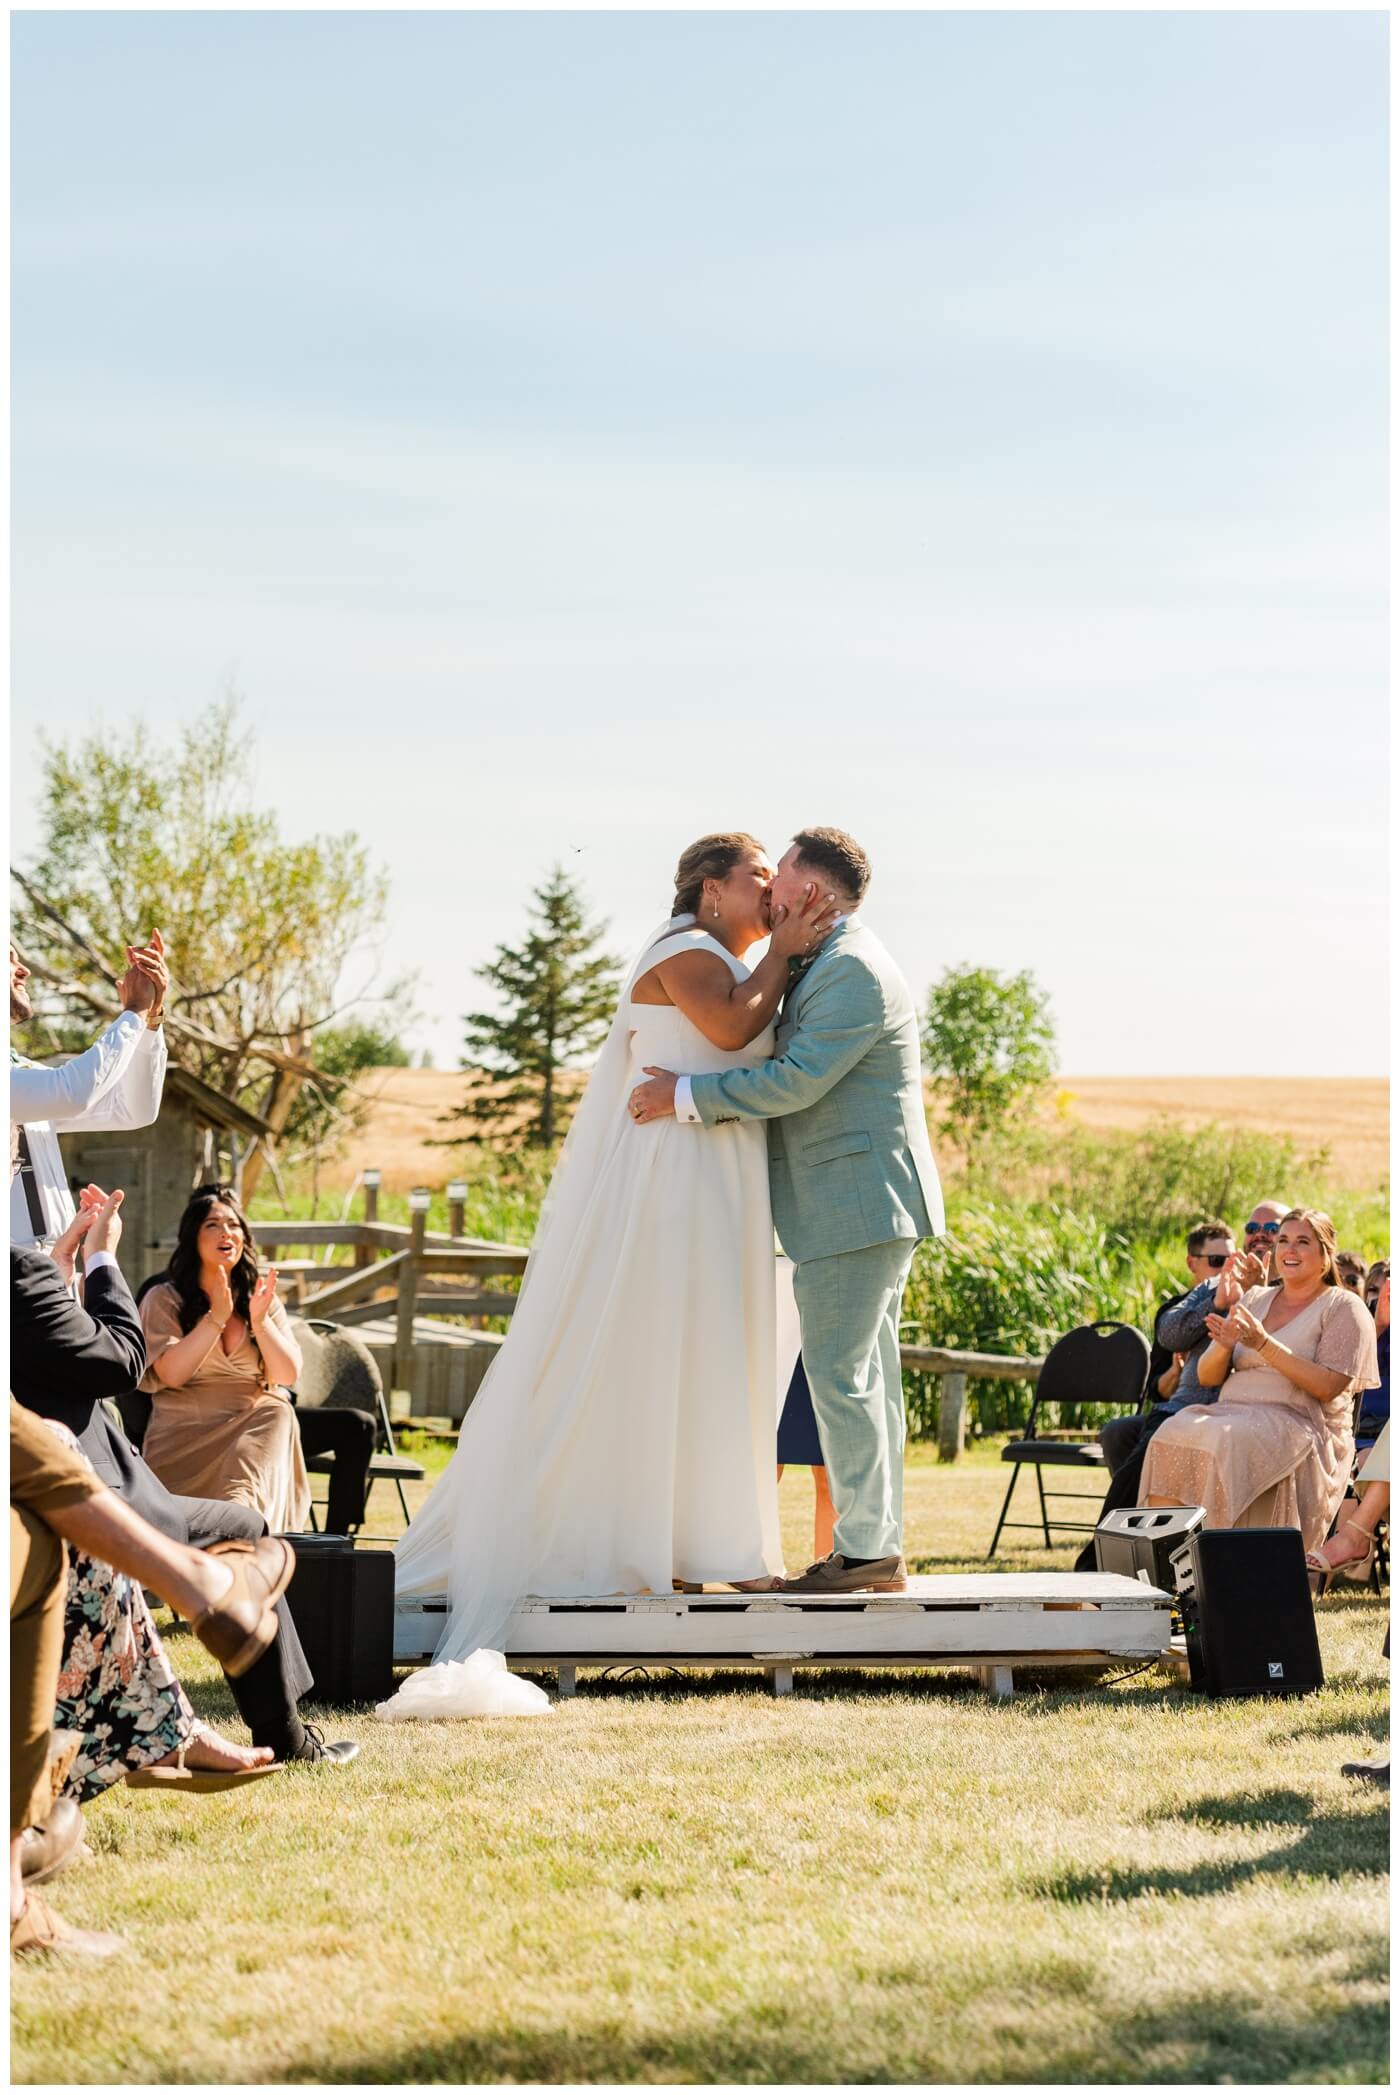 Declan & Katherine - 39 - Regina Wedding - Bride & groom share their first kiss